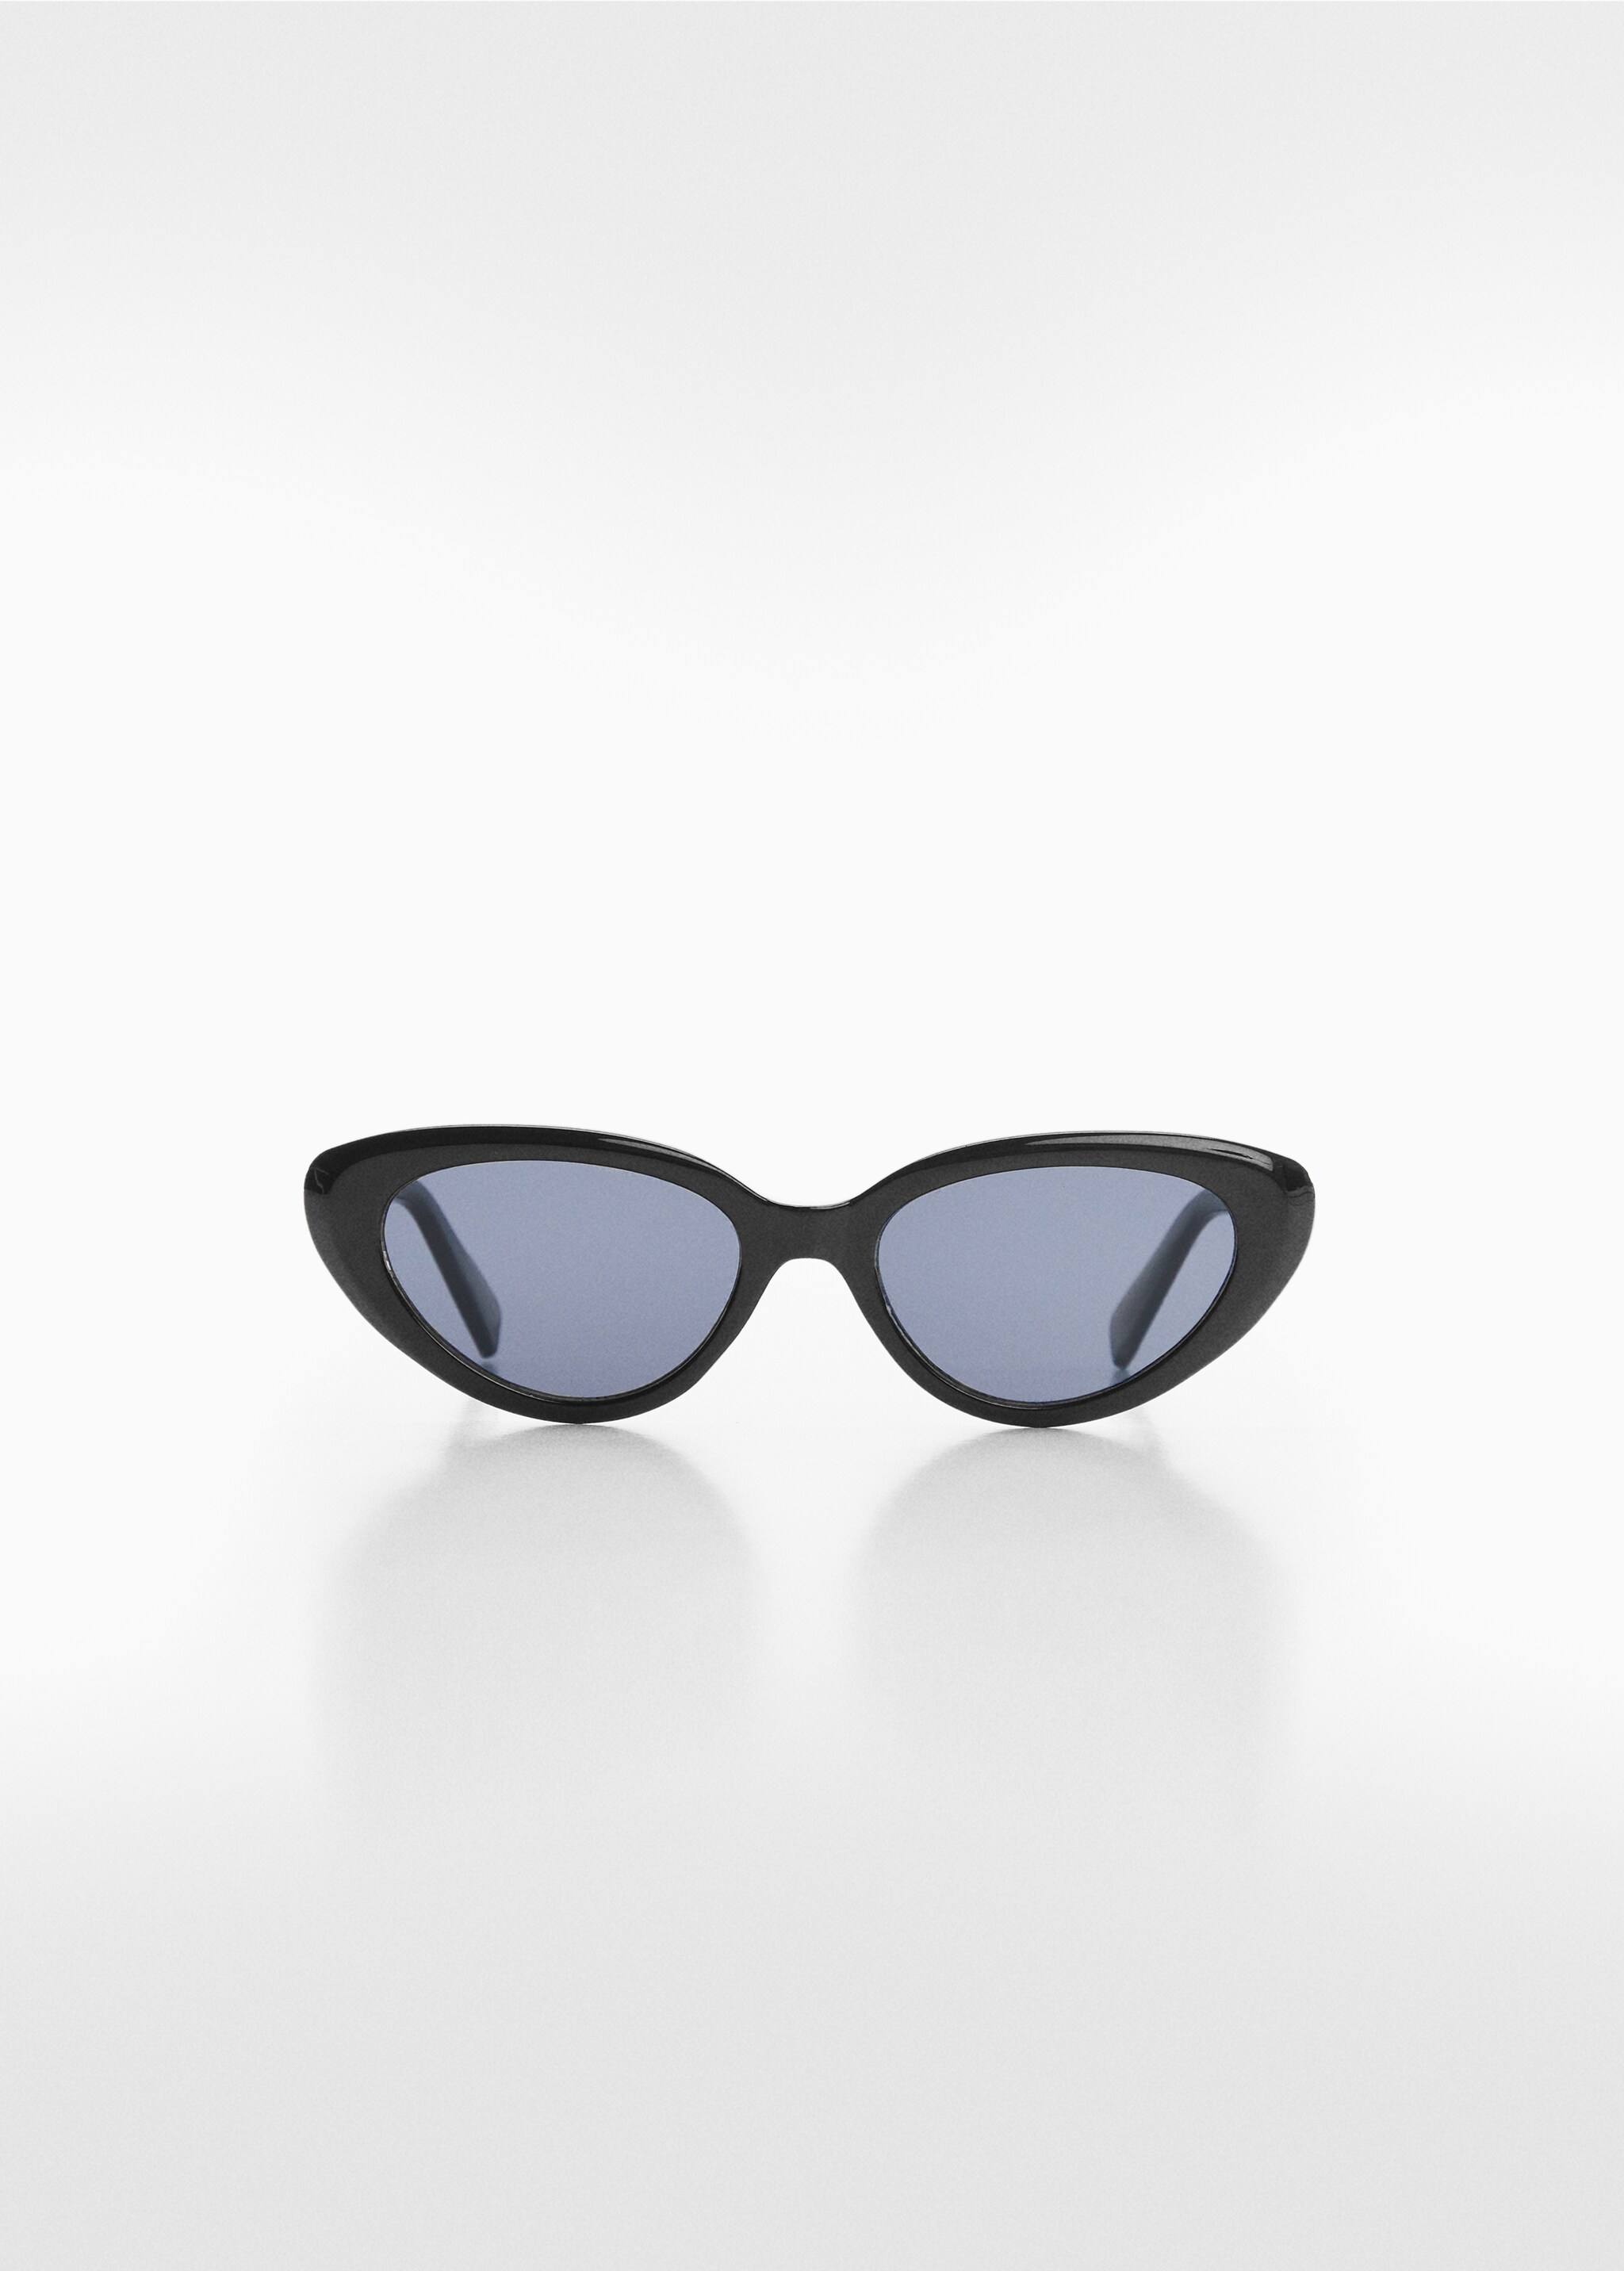 Gafas de sol cat-eye - Artículo sin modelo